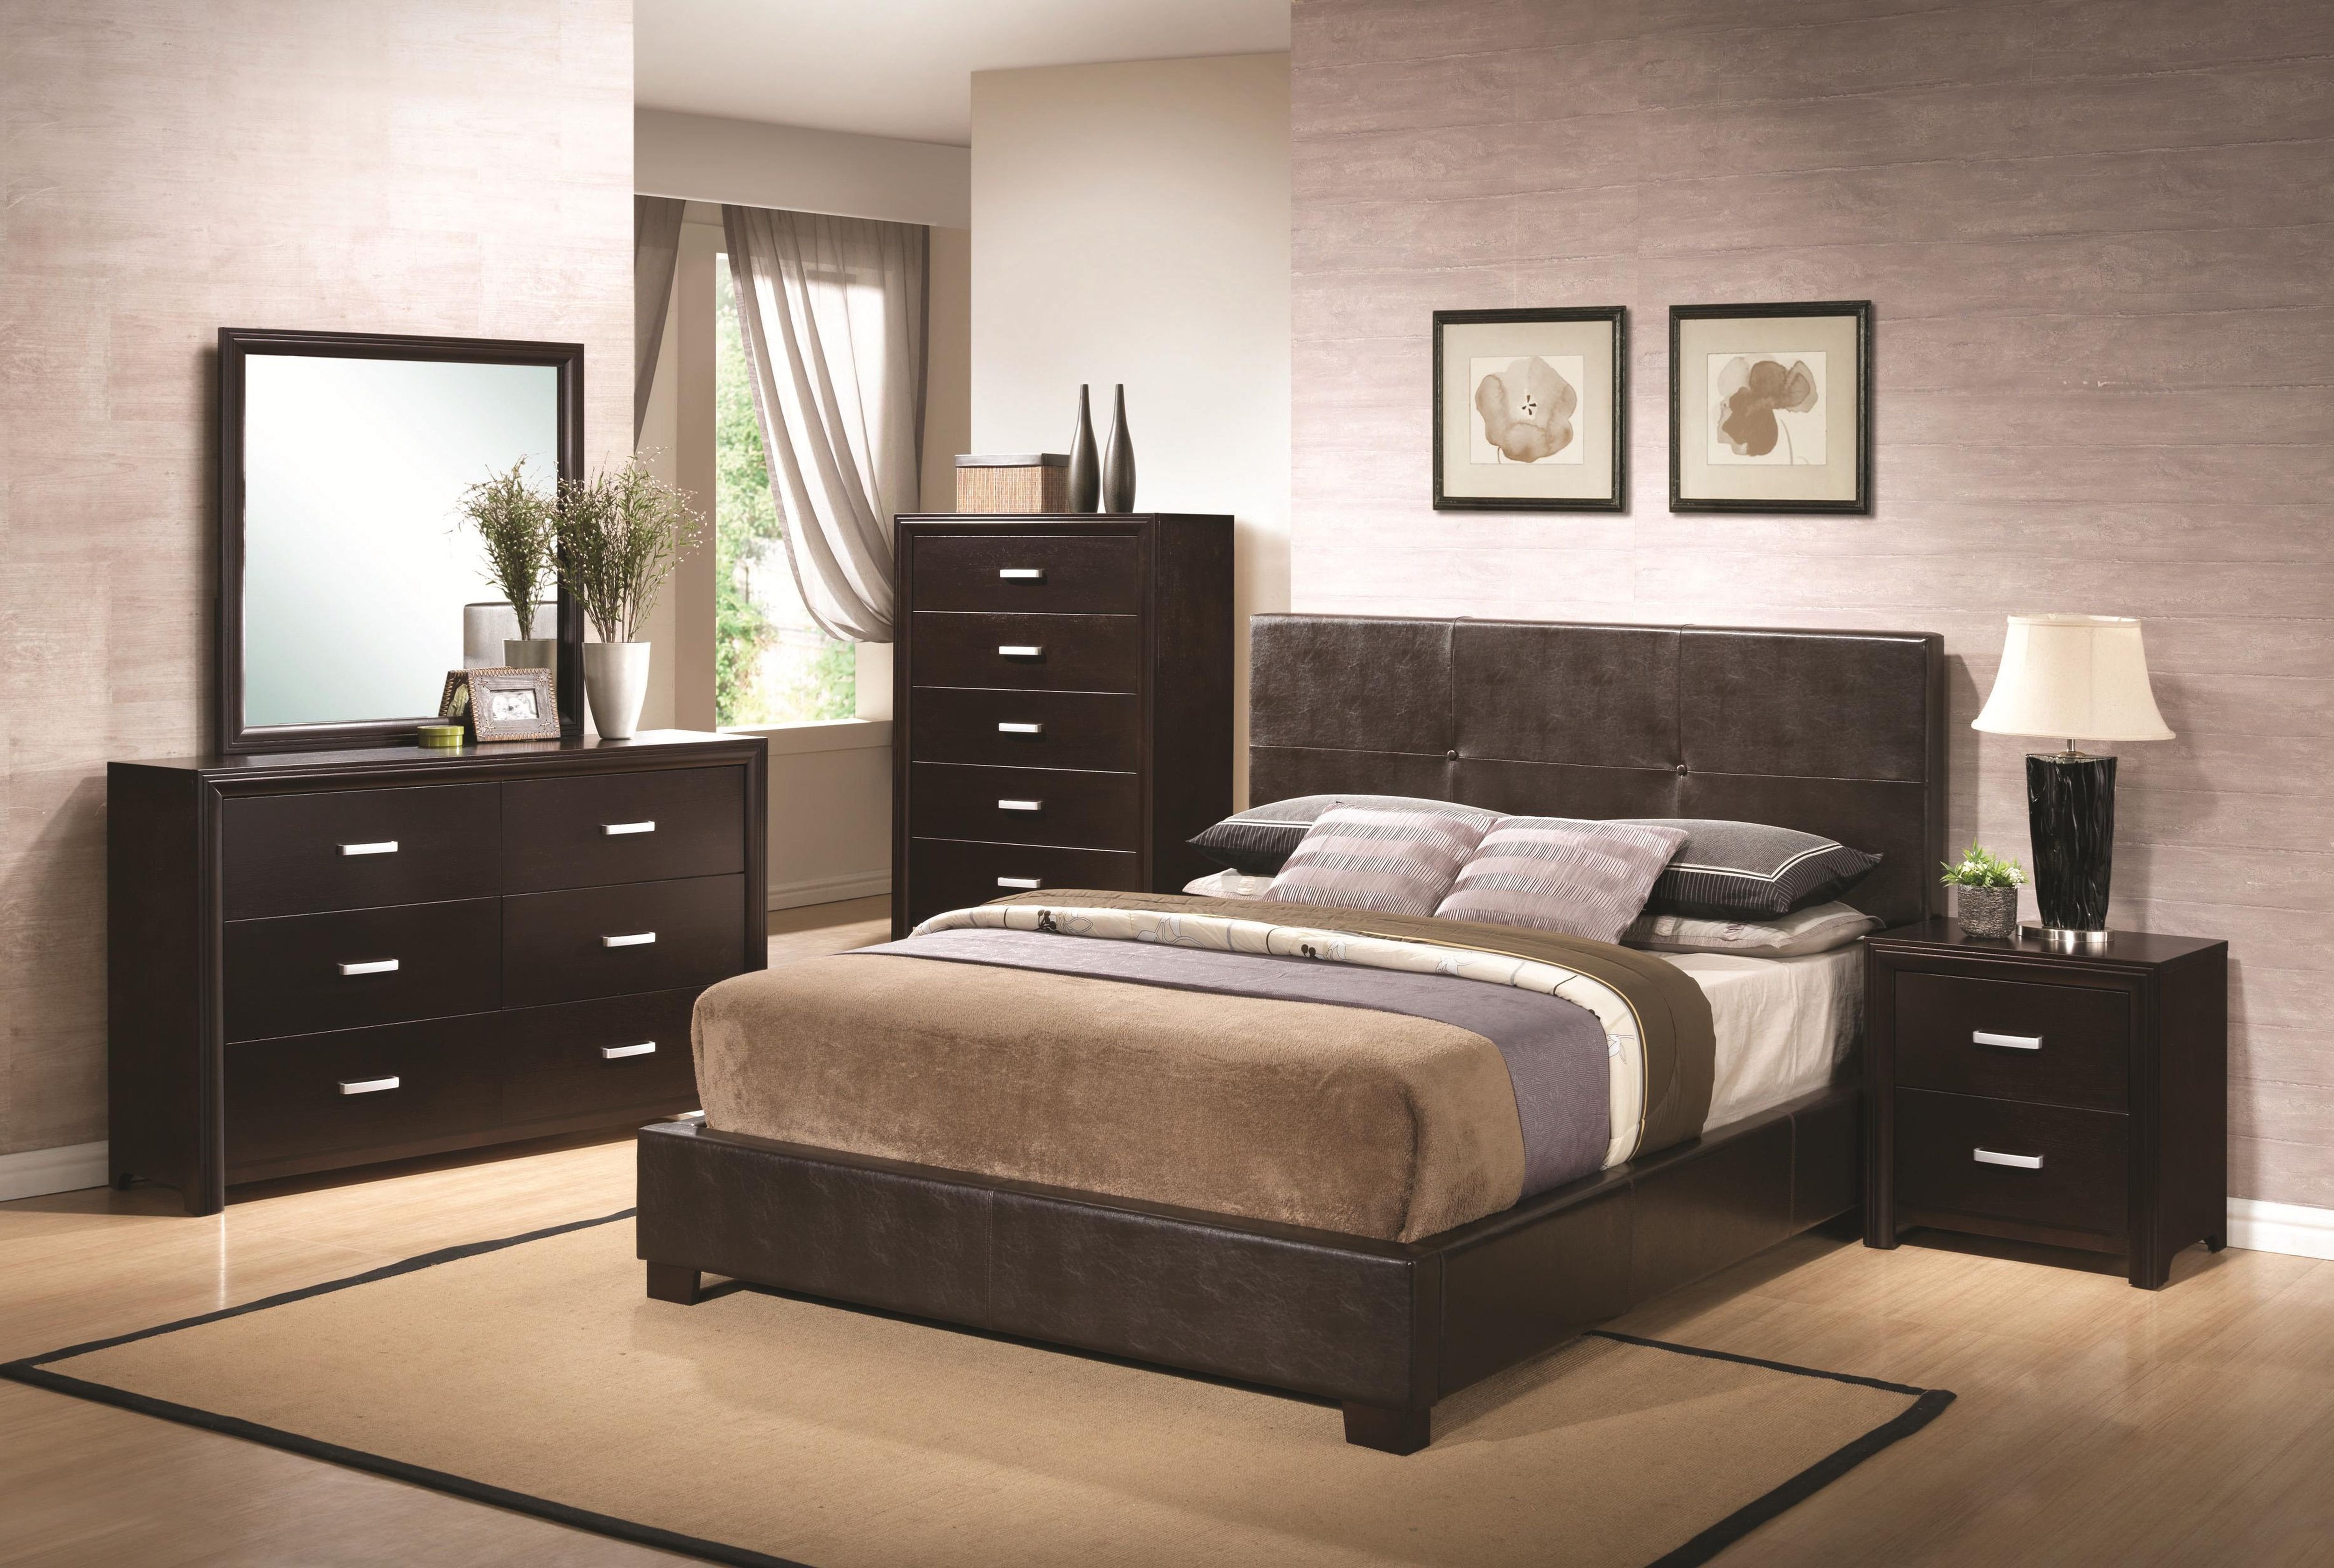 queen bedroom furniture ikea